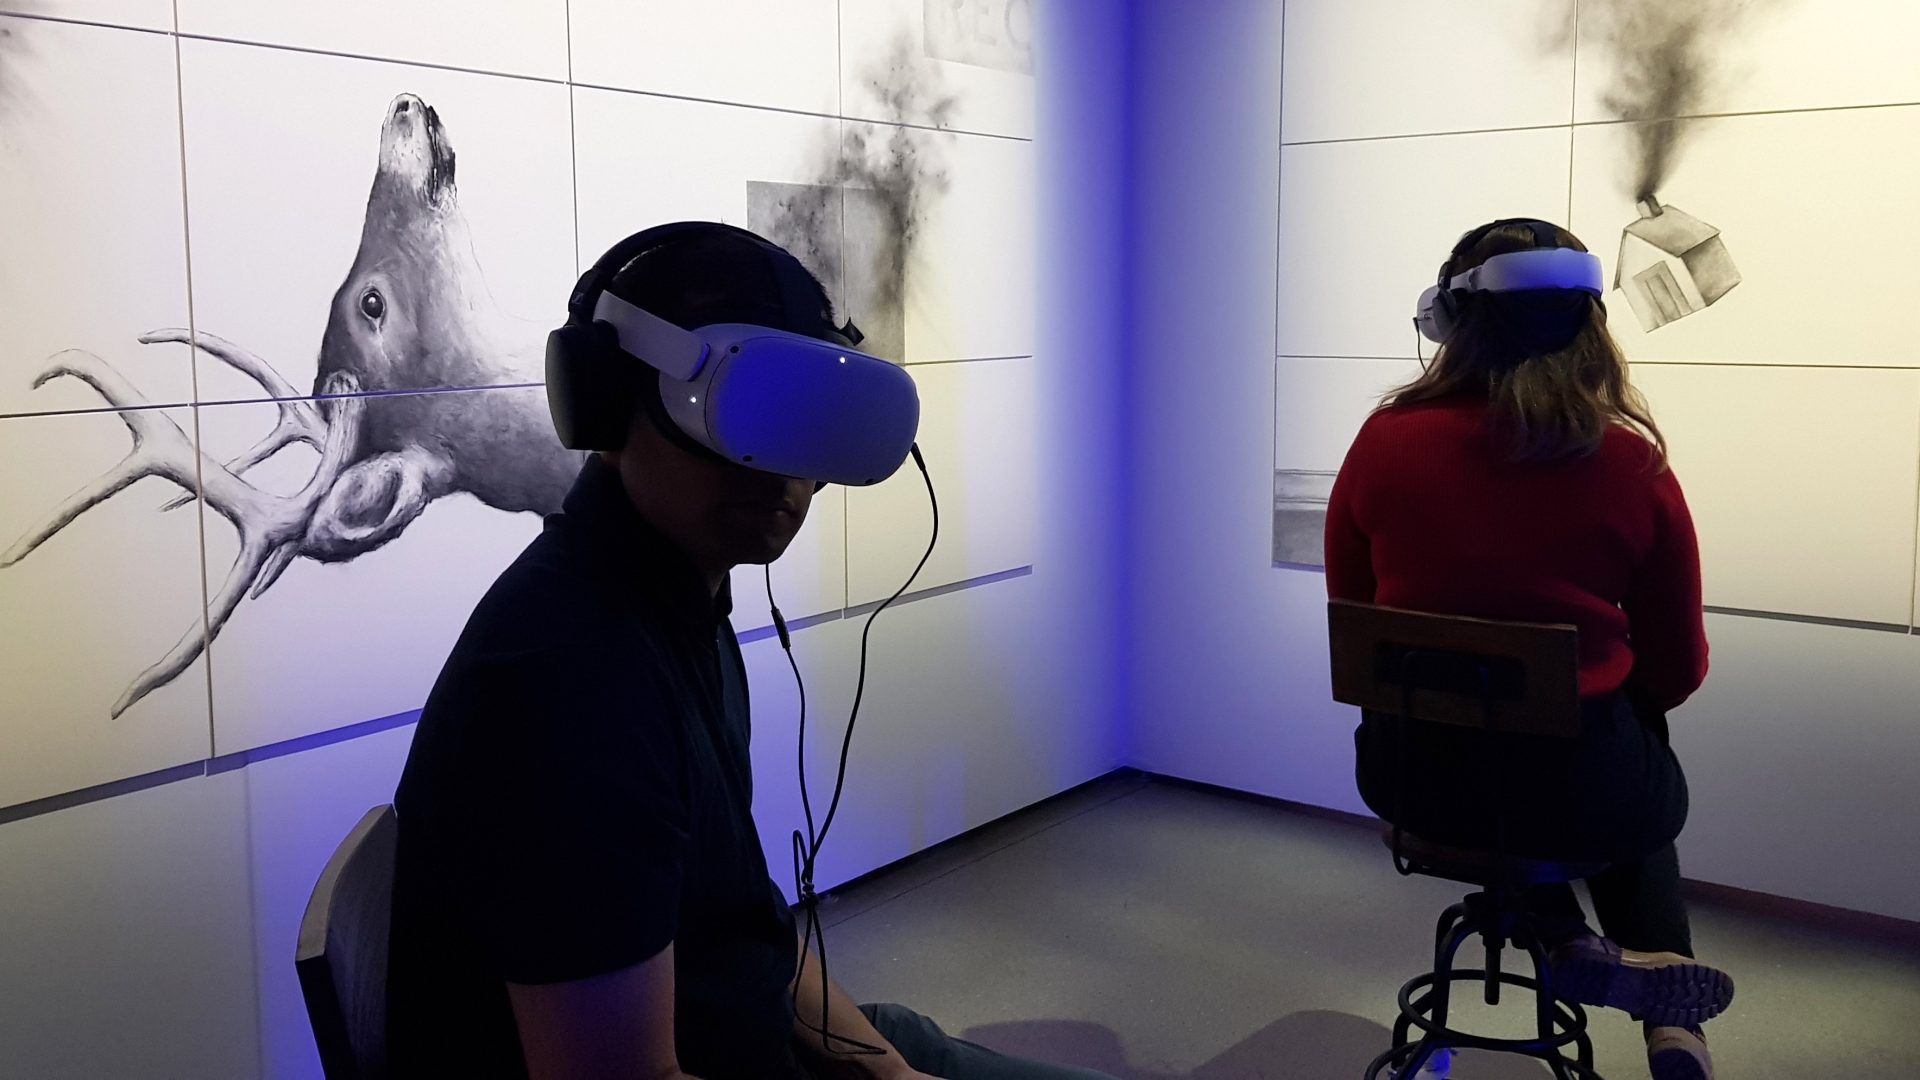 Unas personas llevan unas gafas de realidad virtual mientras visionan "Over the Rainbow", un cortometraje experimental creado por Craig Quintero y que compite en el Festival de Tribeca, el jueves 8 de junio en la sede del festival en Nueva York. EFE/Jorge Fuentelsaz